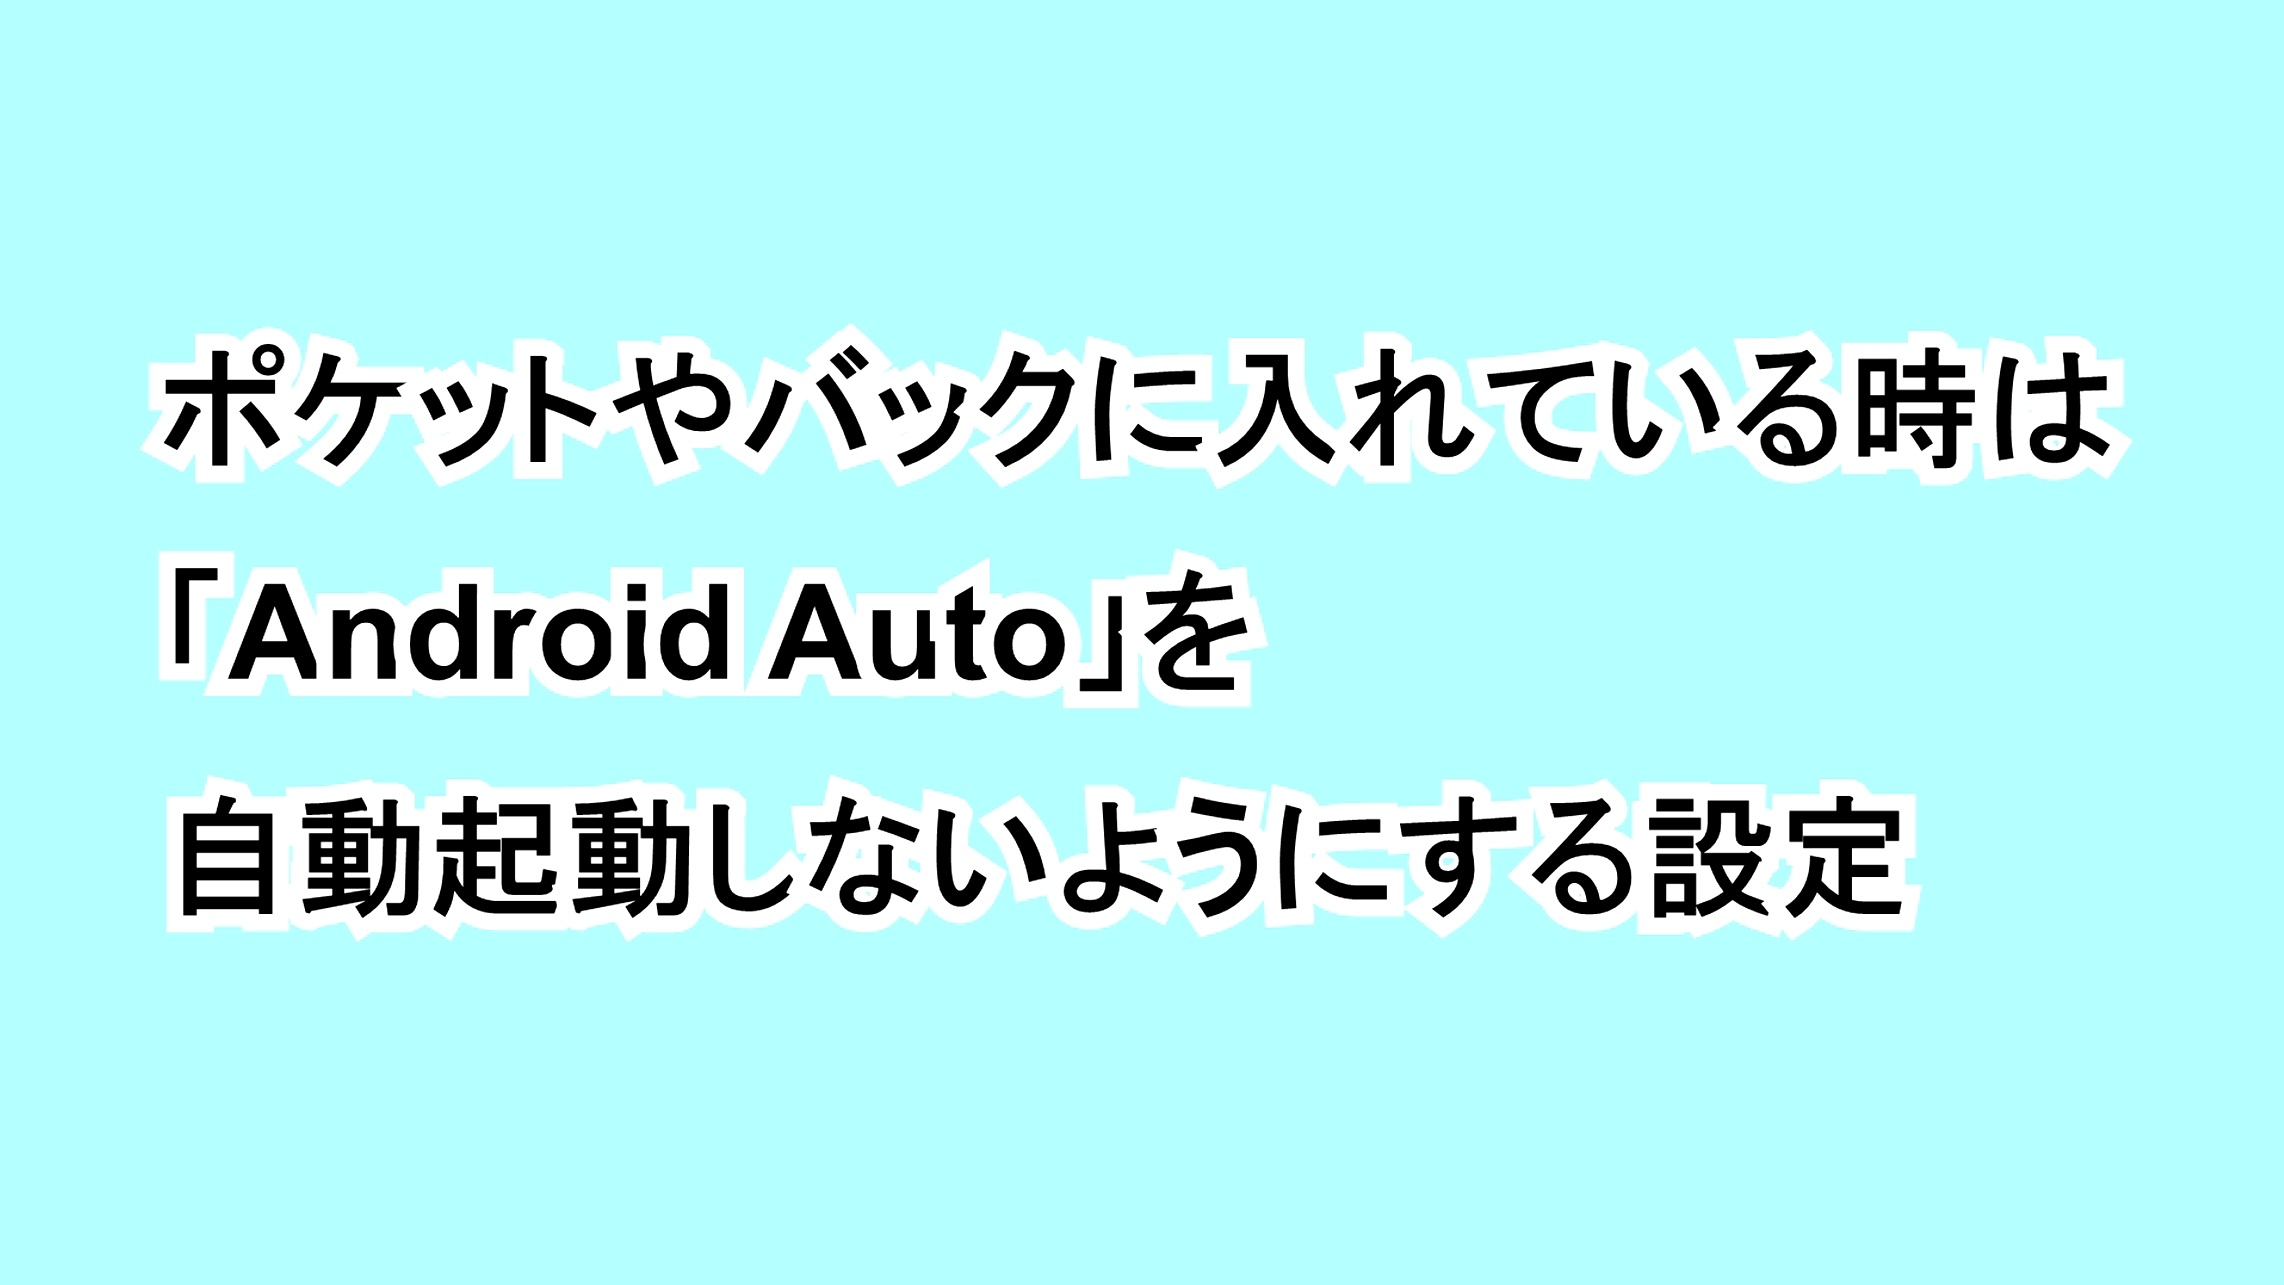 ポケットやバックに入れている時は「Android Auto」を自動起動しないようにする設定